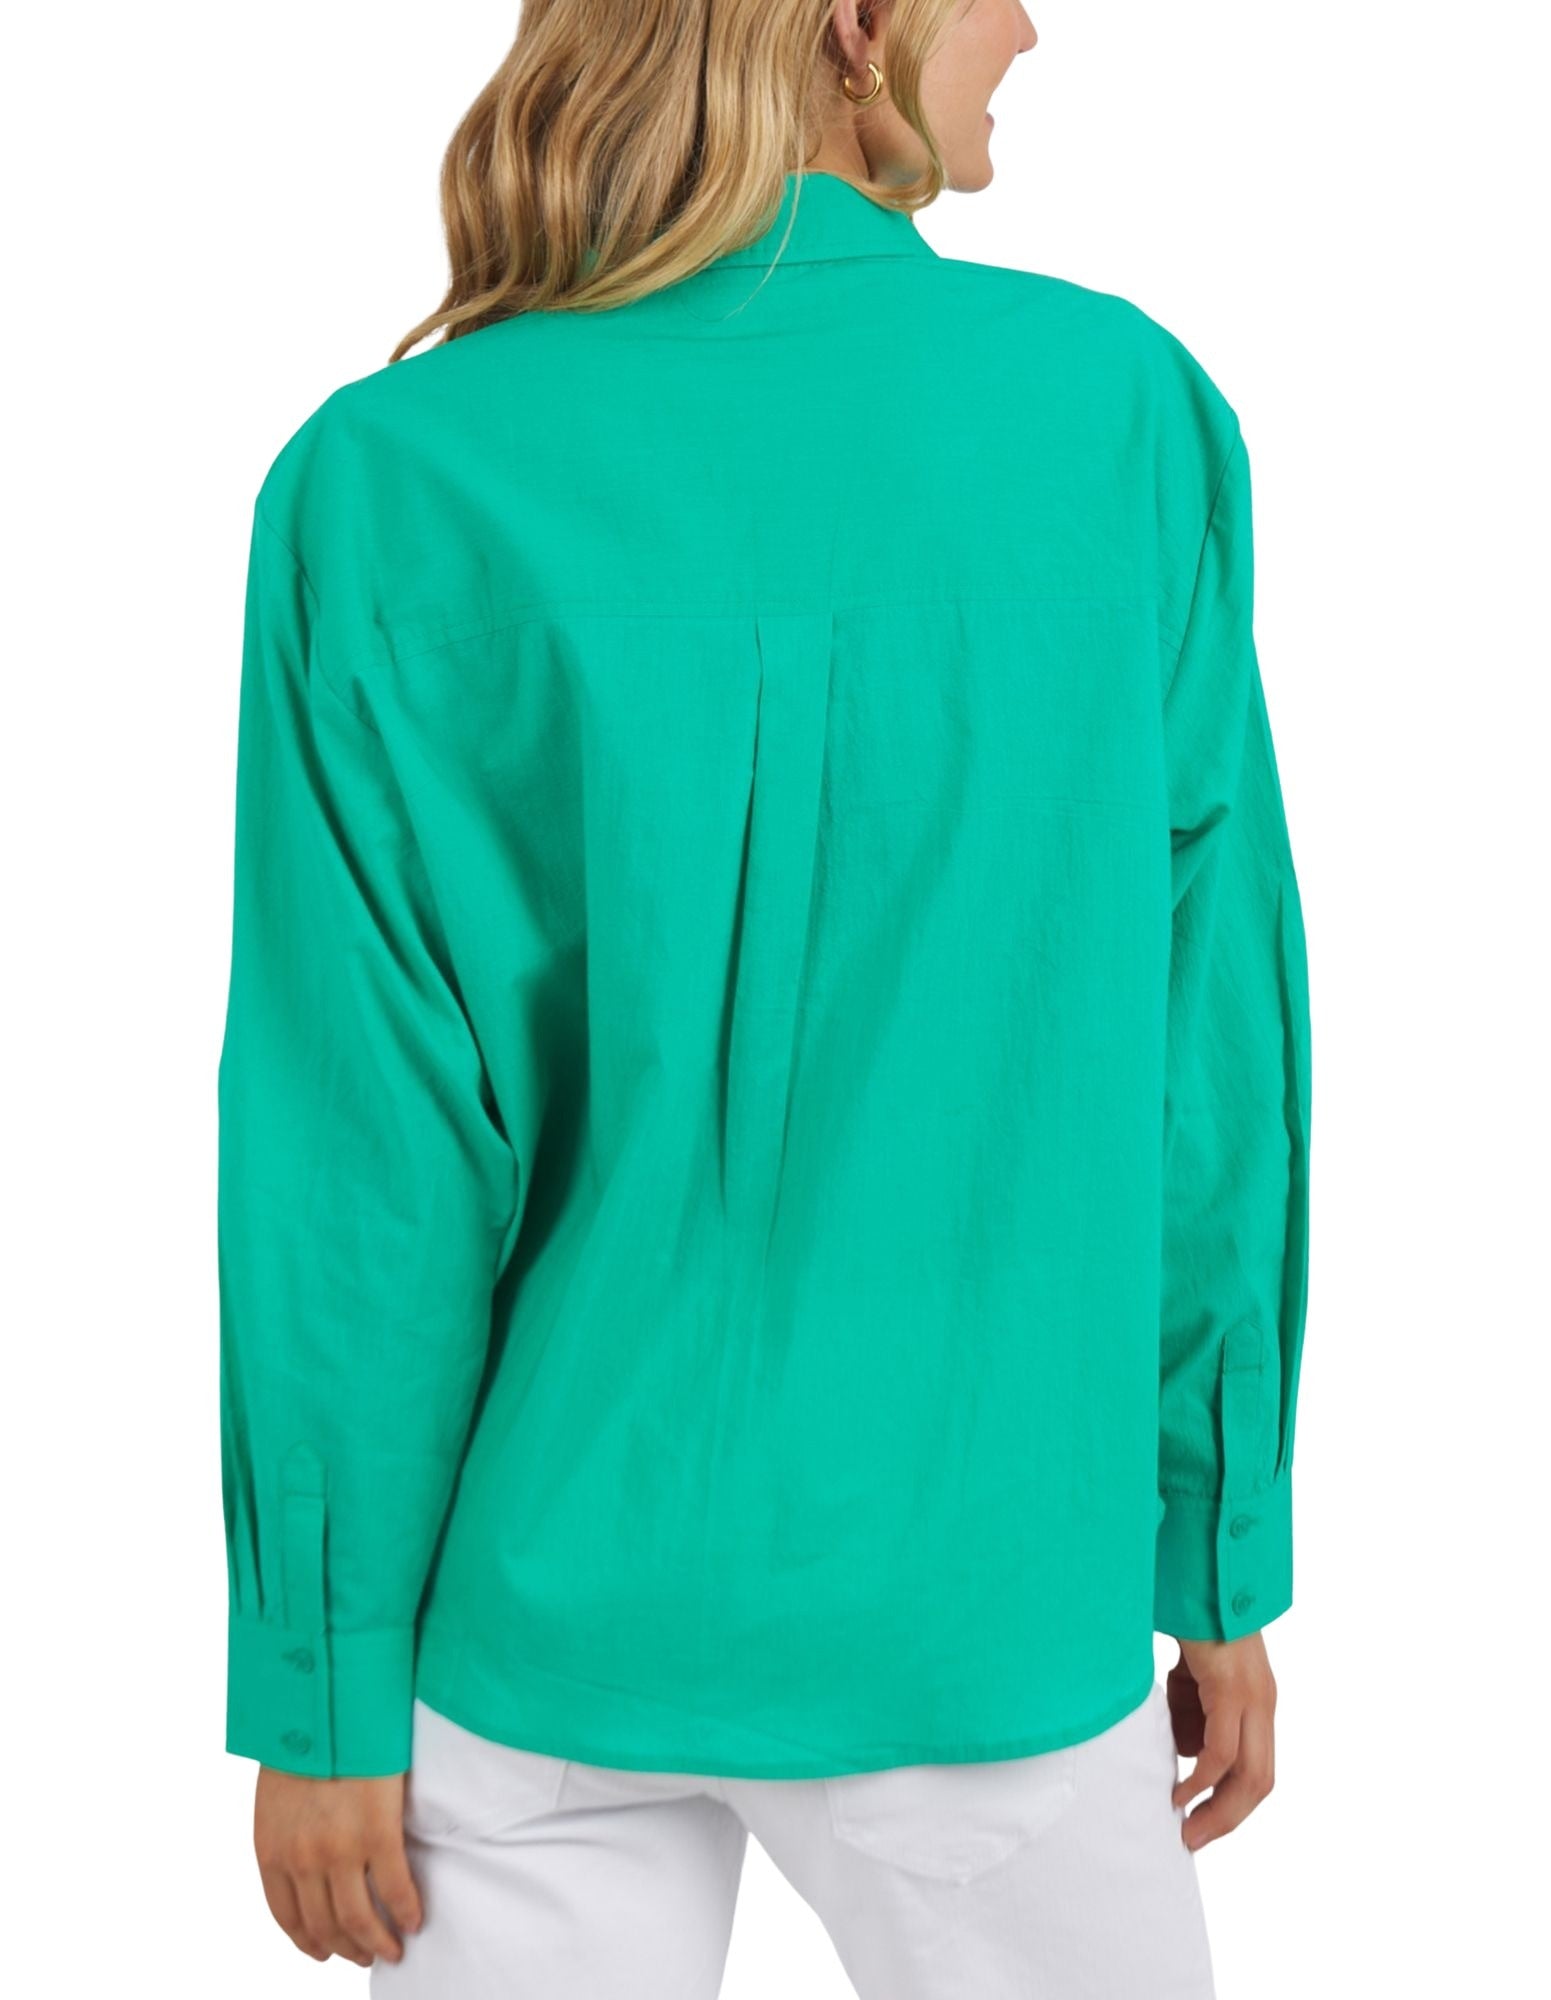 Foxwood - Sunday Shirt - Emerald